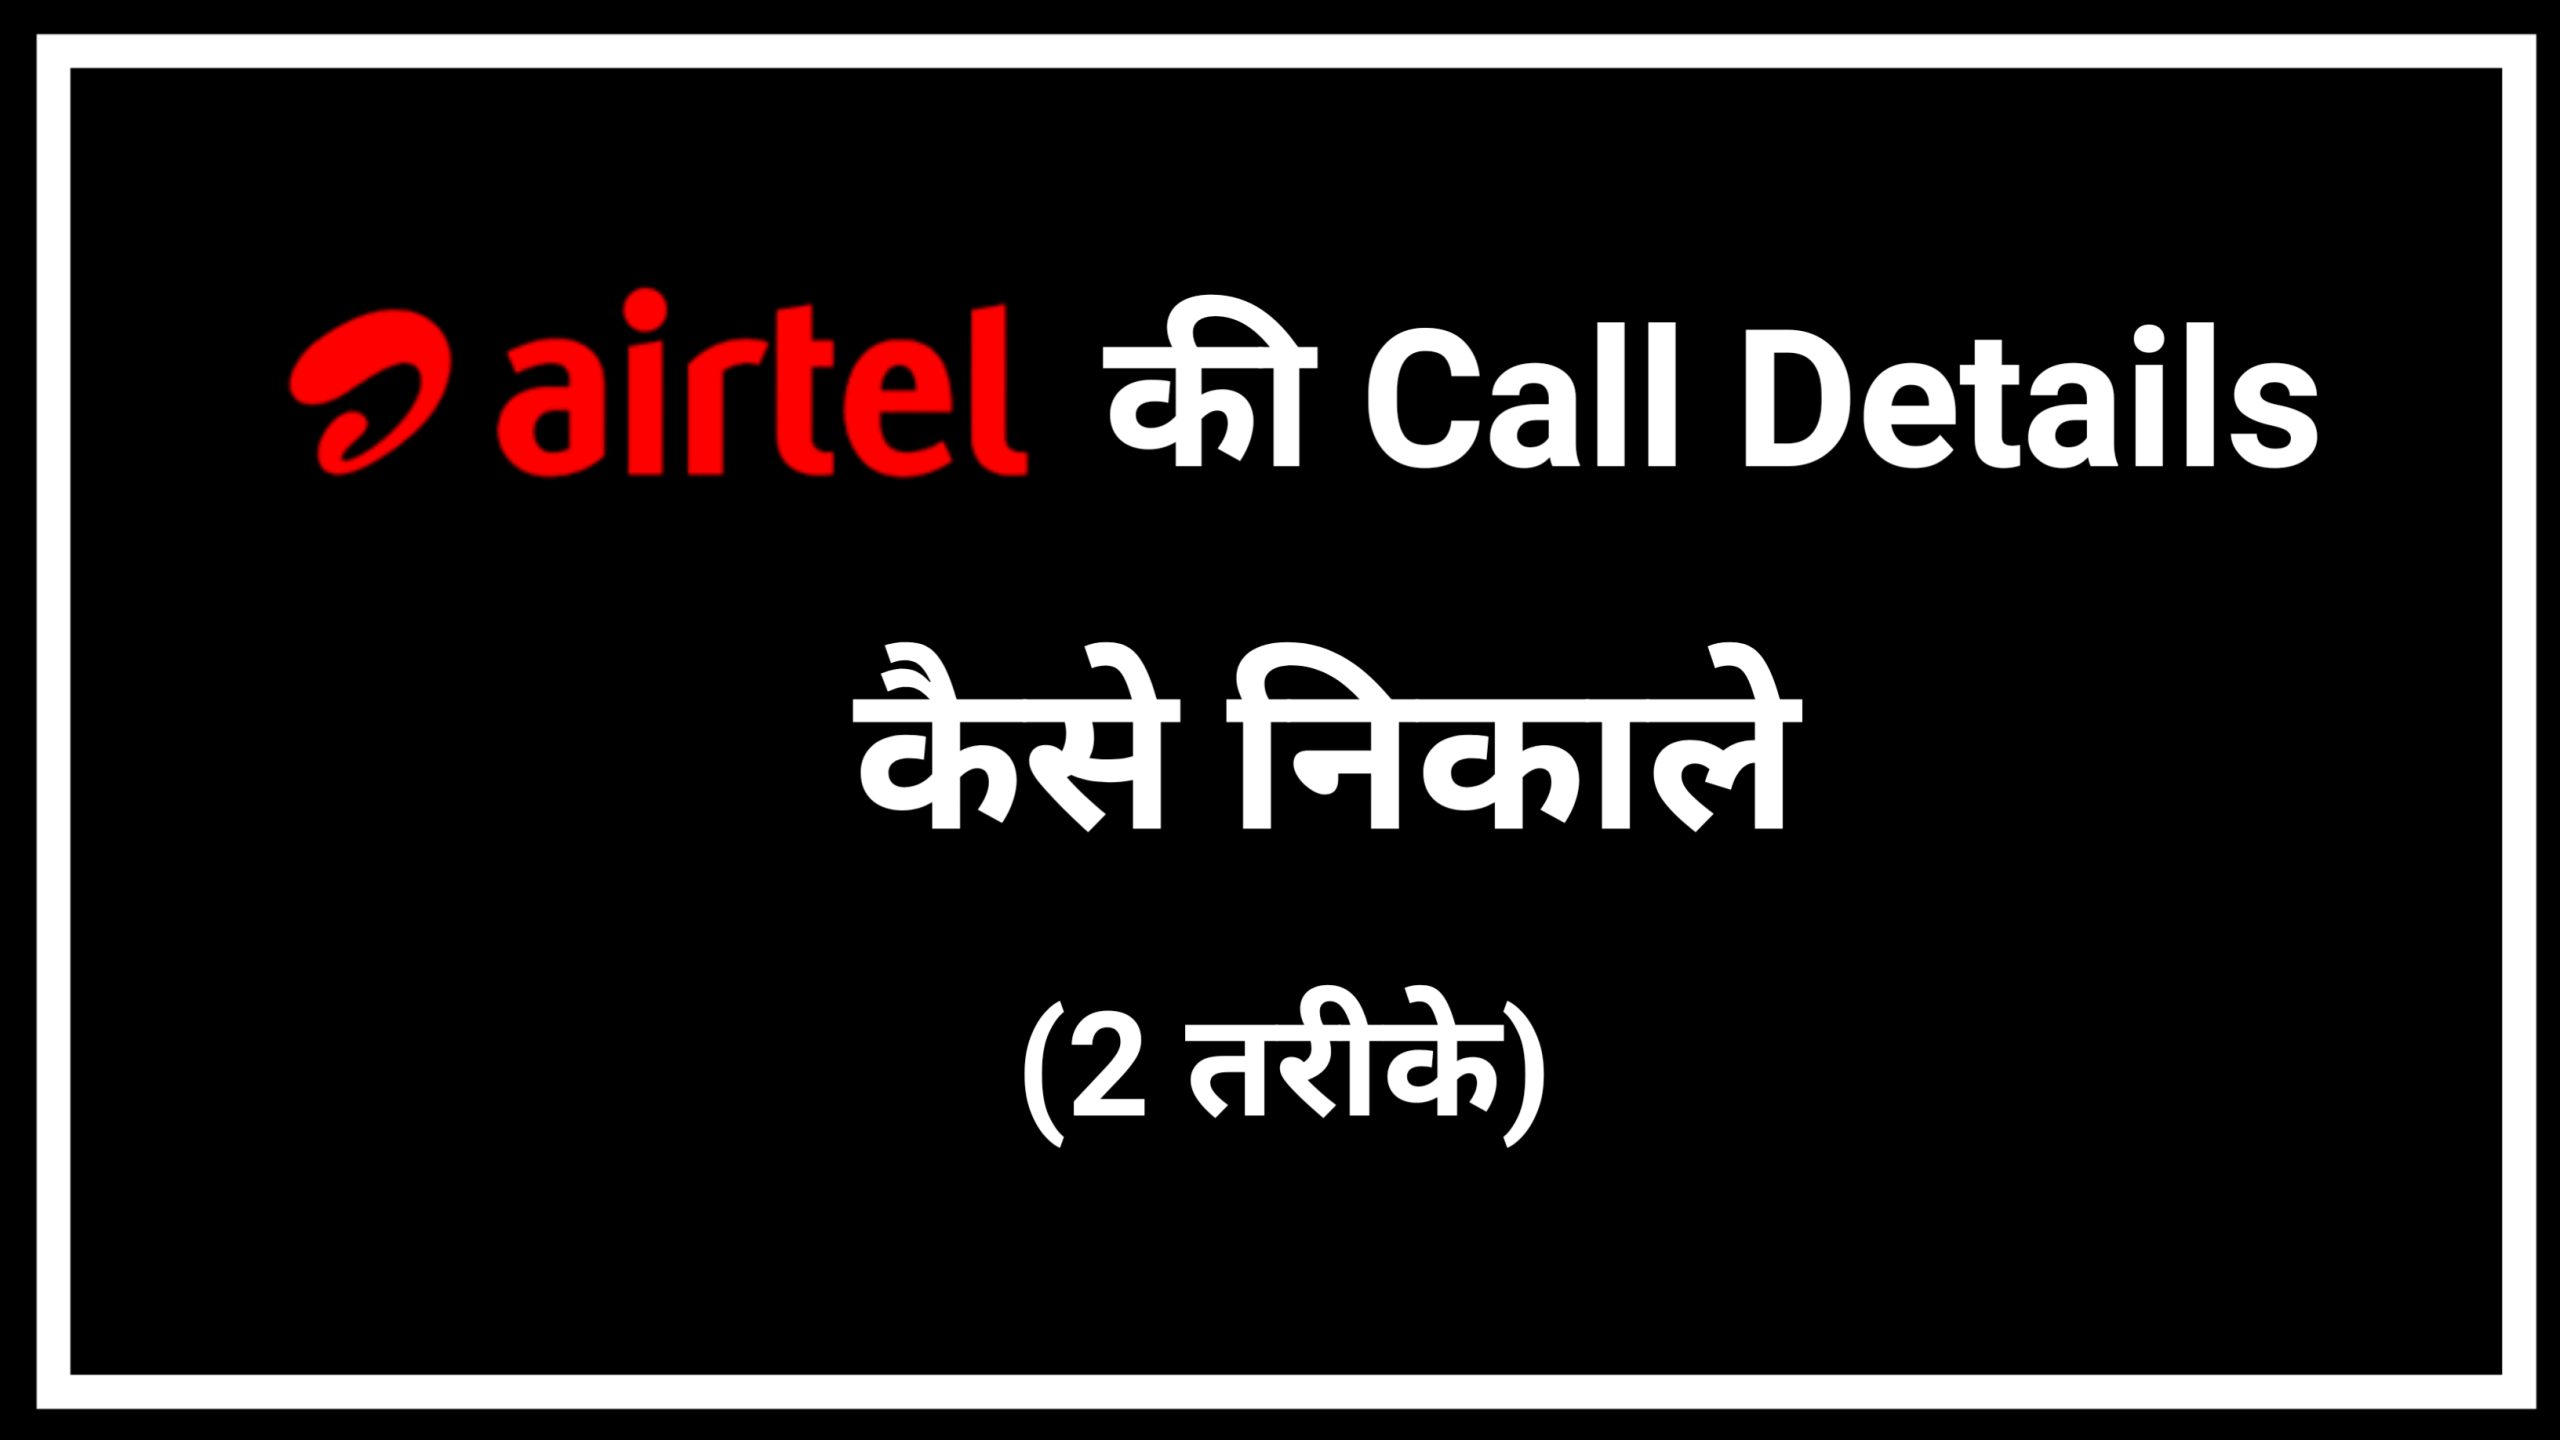 Airtel Sim Call Details kaise nikale